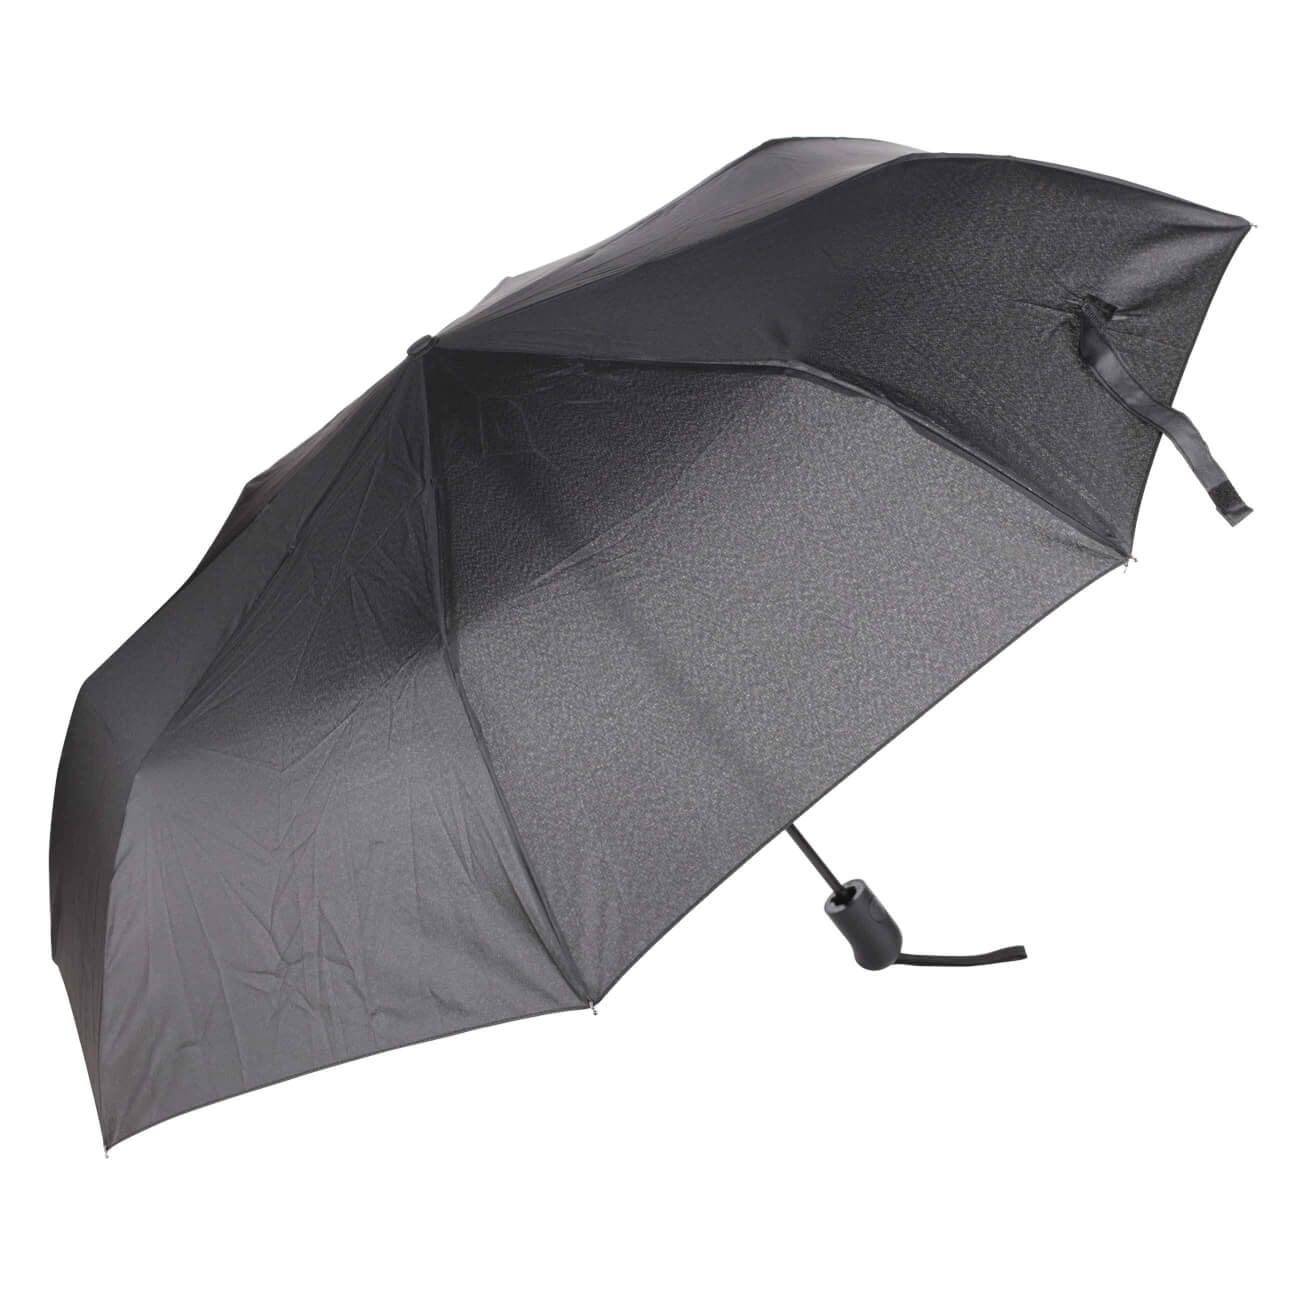 Зонт, 56 см, складной, полу-автоматический, эпонж, черный, Rainy автоматический обратный складной зонт светодиодный фонарик десятикостный трехстворчатый автоматический бизнес зонт